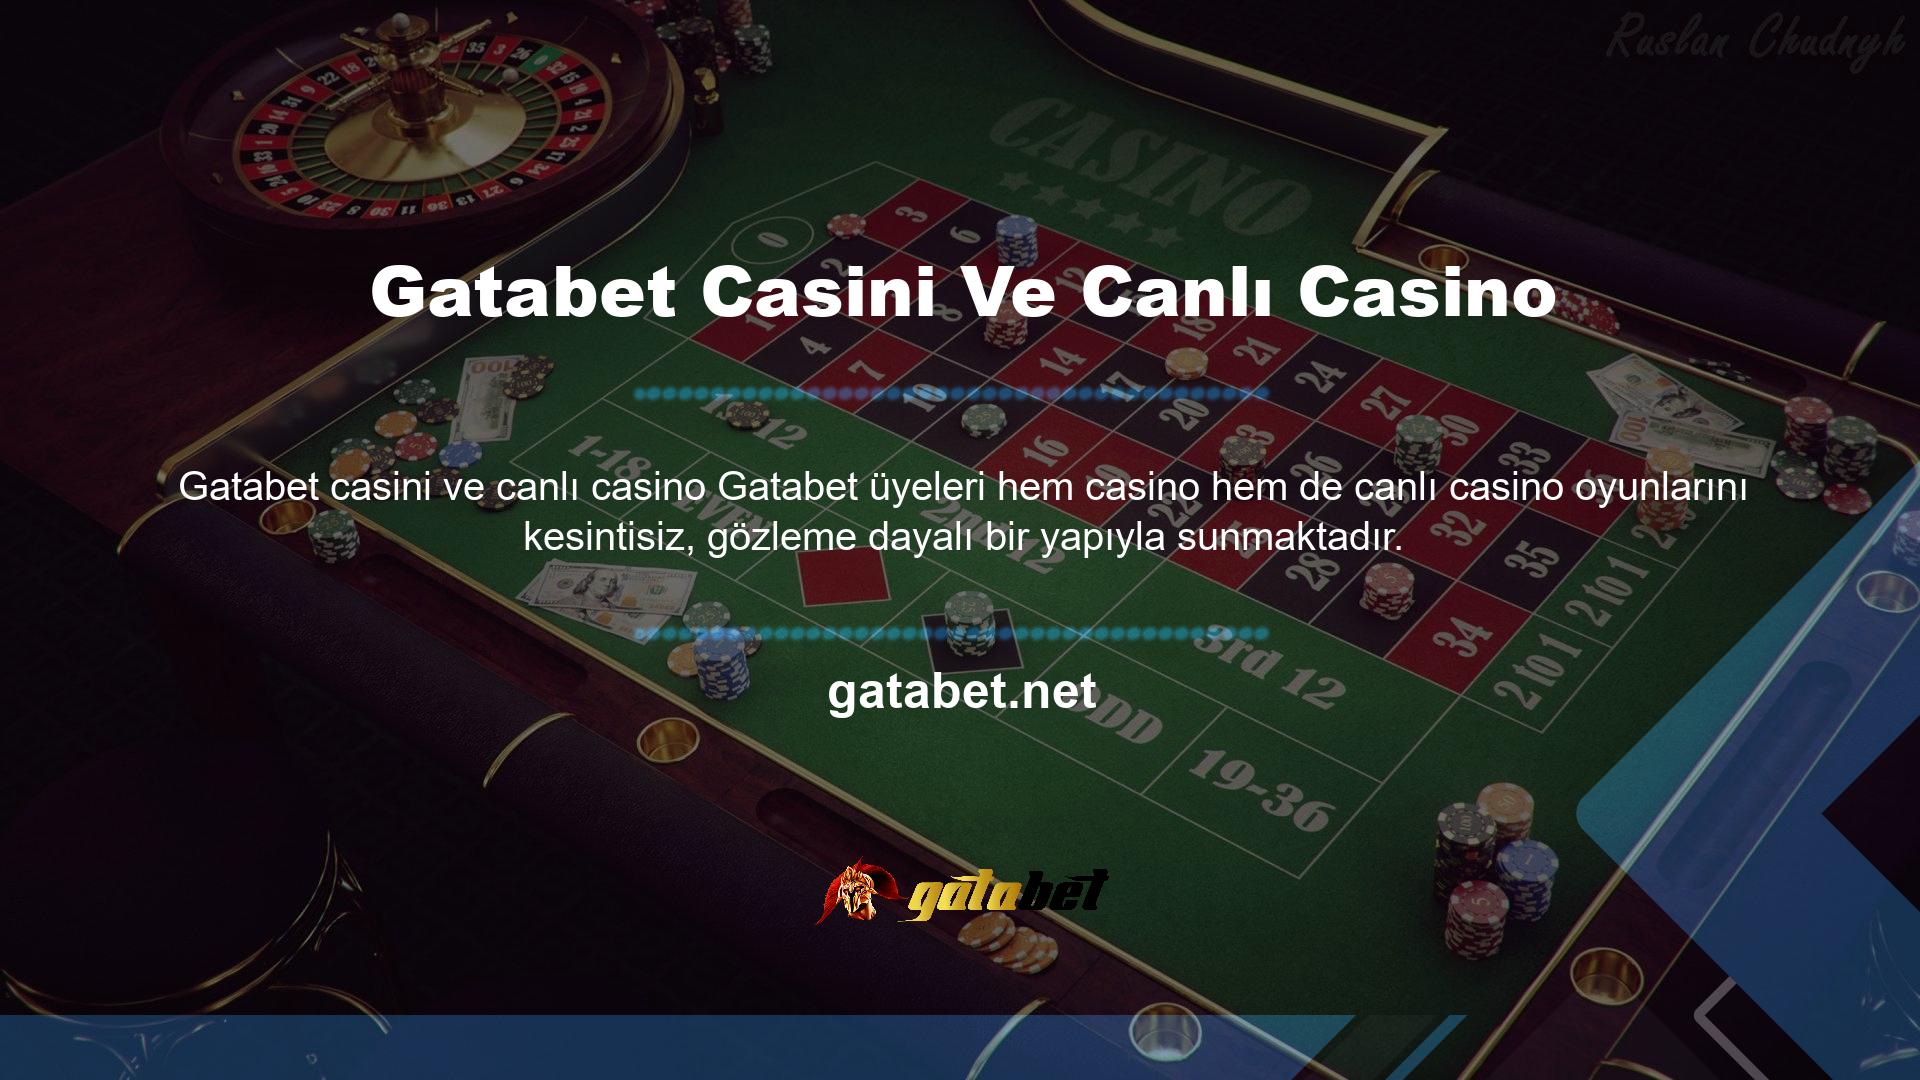 Gatabet canlı casino oyunları, para kazanmanın yanı sıra üyelerine tonlarca eğlence ve eğlence sunuyor